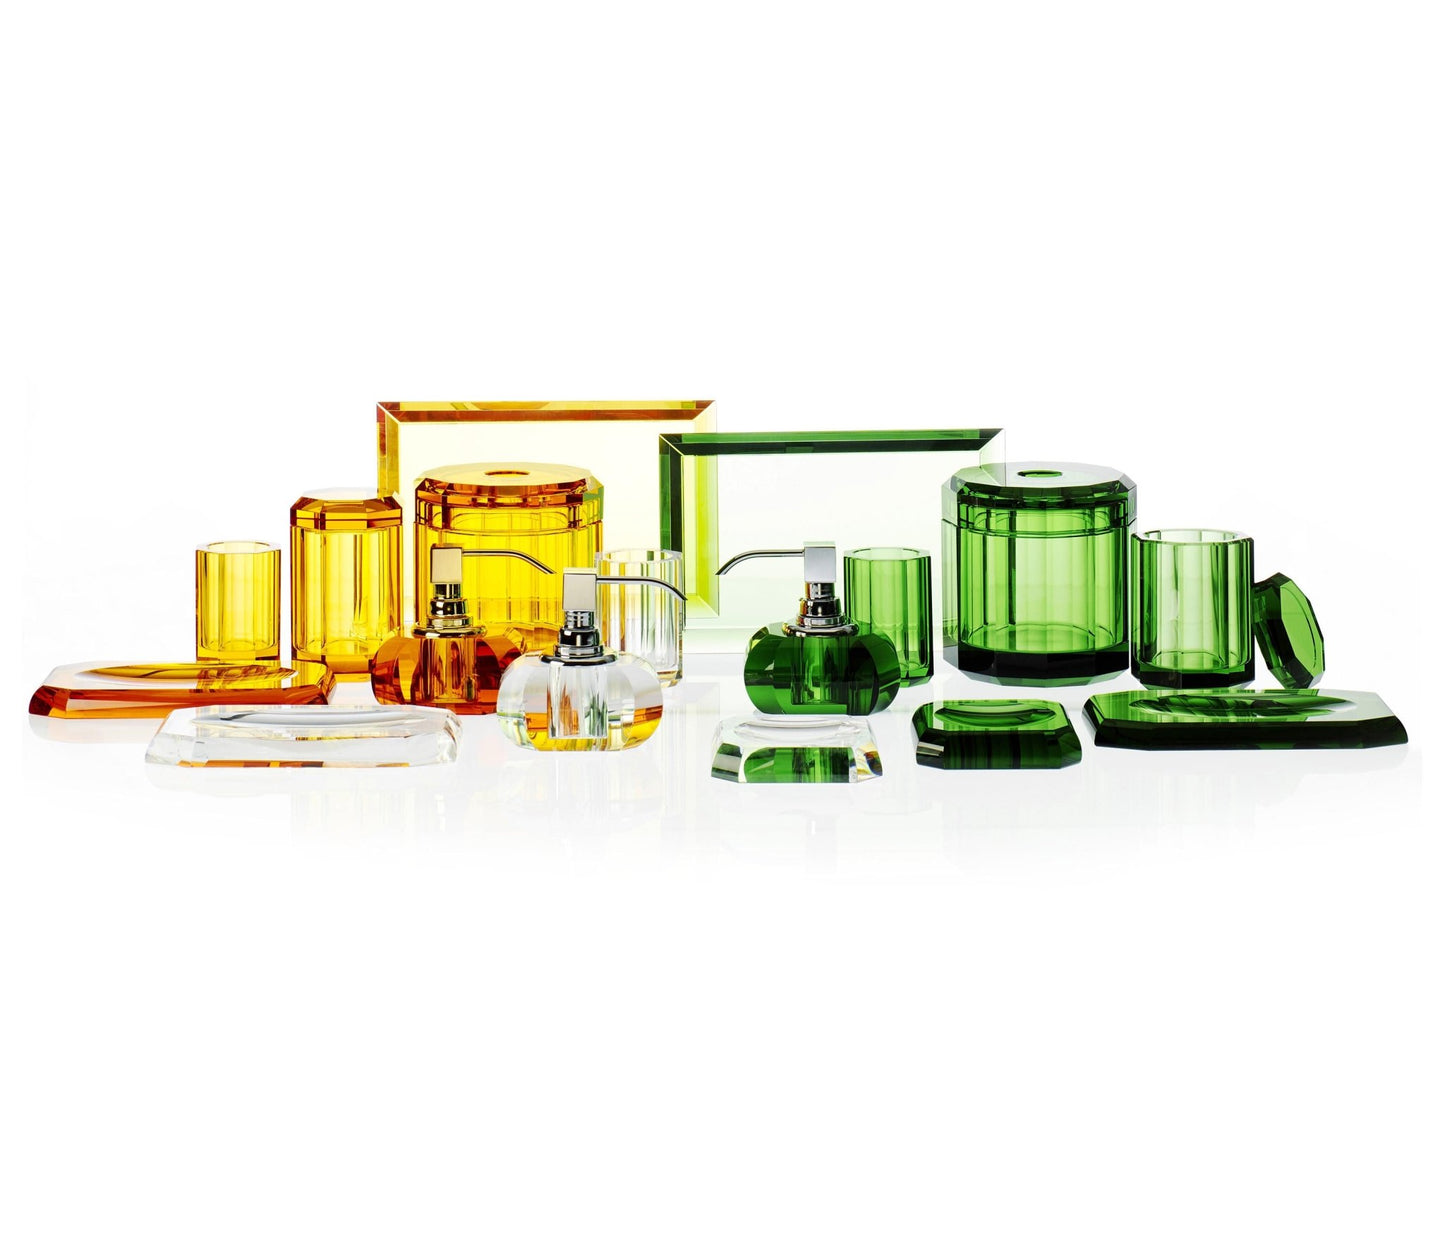 English Green Glass Bathroom Accessories Soap Dish by Decor Walther - |VESIMI Design|